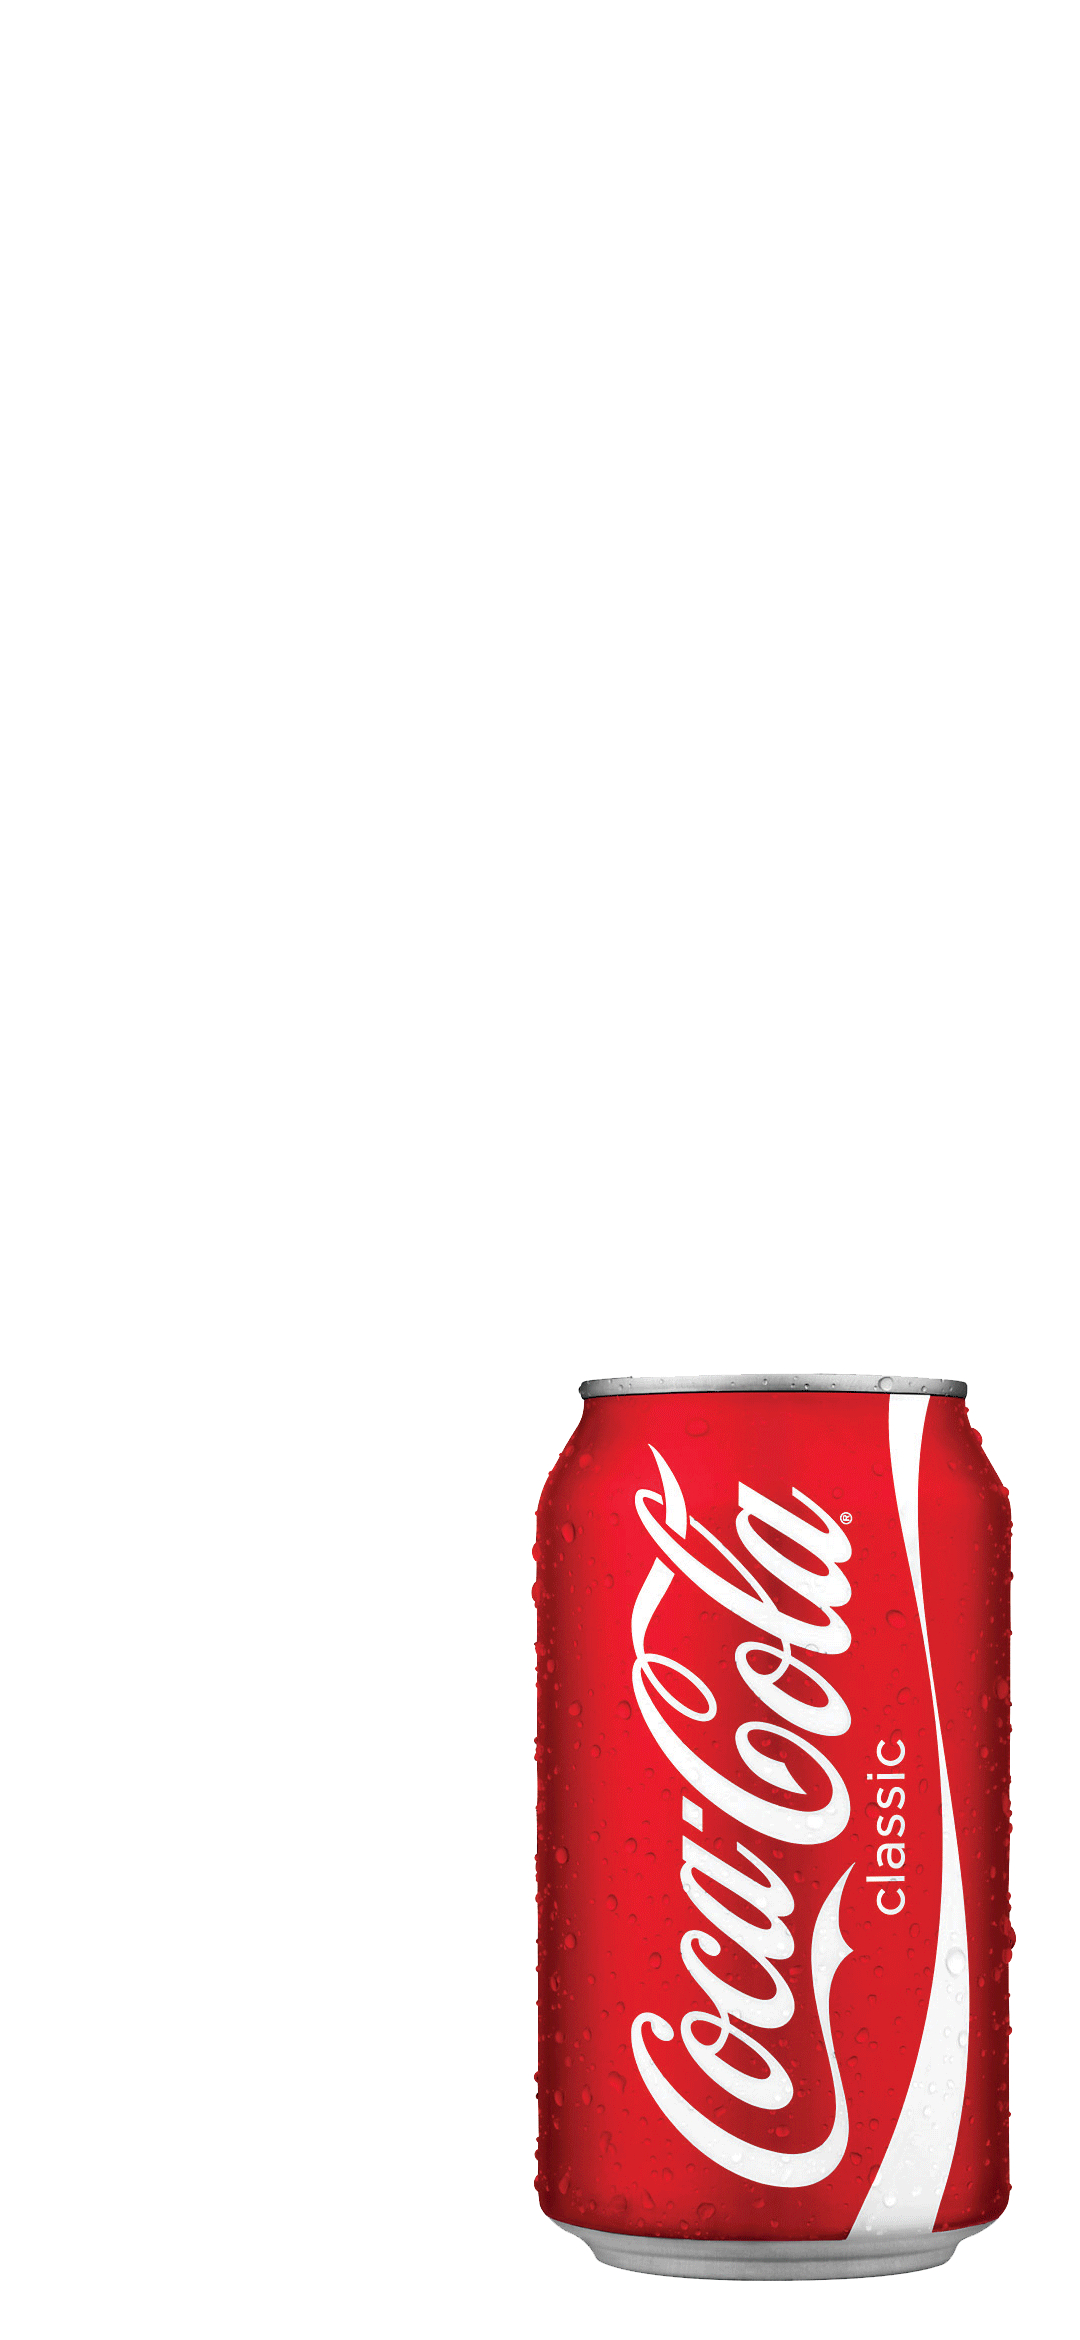 コカ コーラ 缶 Aquos Zero2 スマホ壁紙 待ち受け スマラン